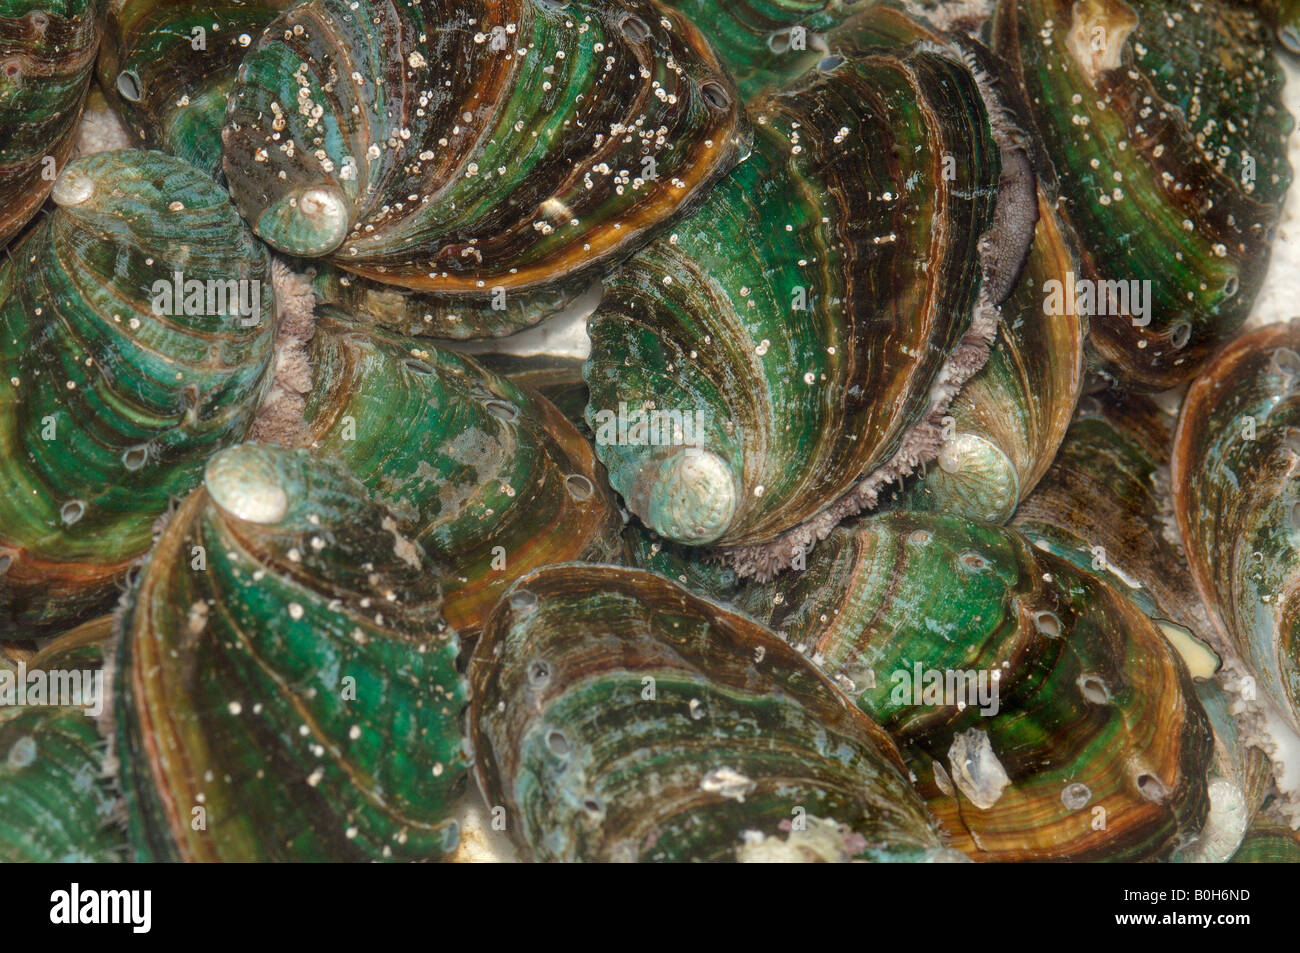 Essbare Abalonen Haliotis als Lebensmittel Rongcheng China verkauft und werden gedacht, um das Immunsystem zu stärken Stockfoto